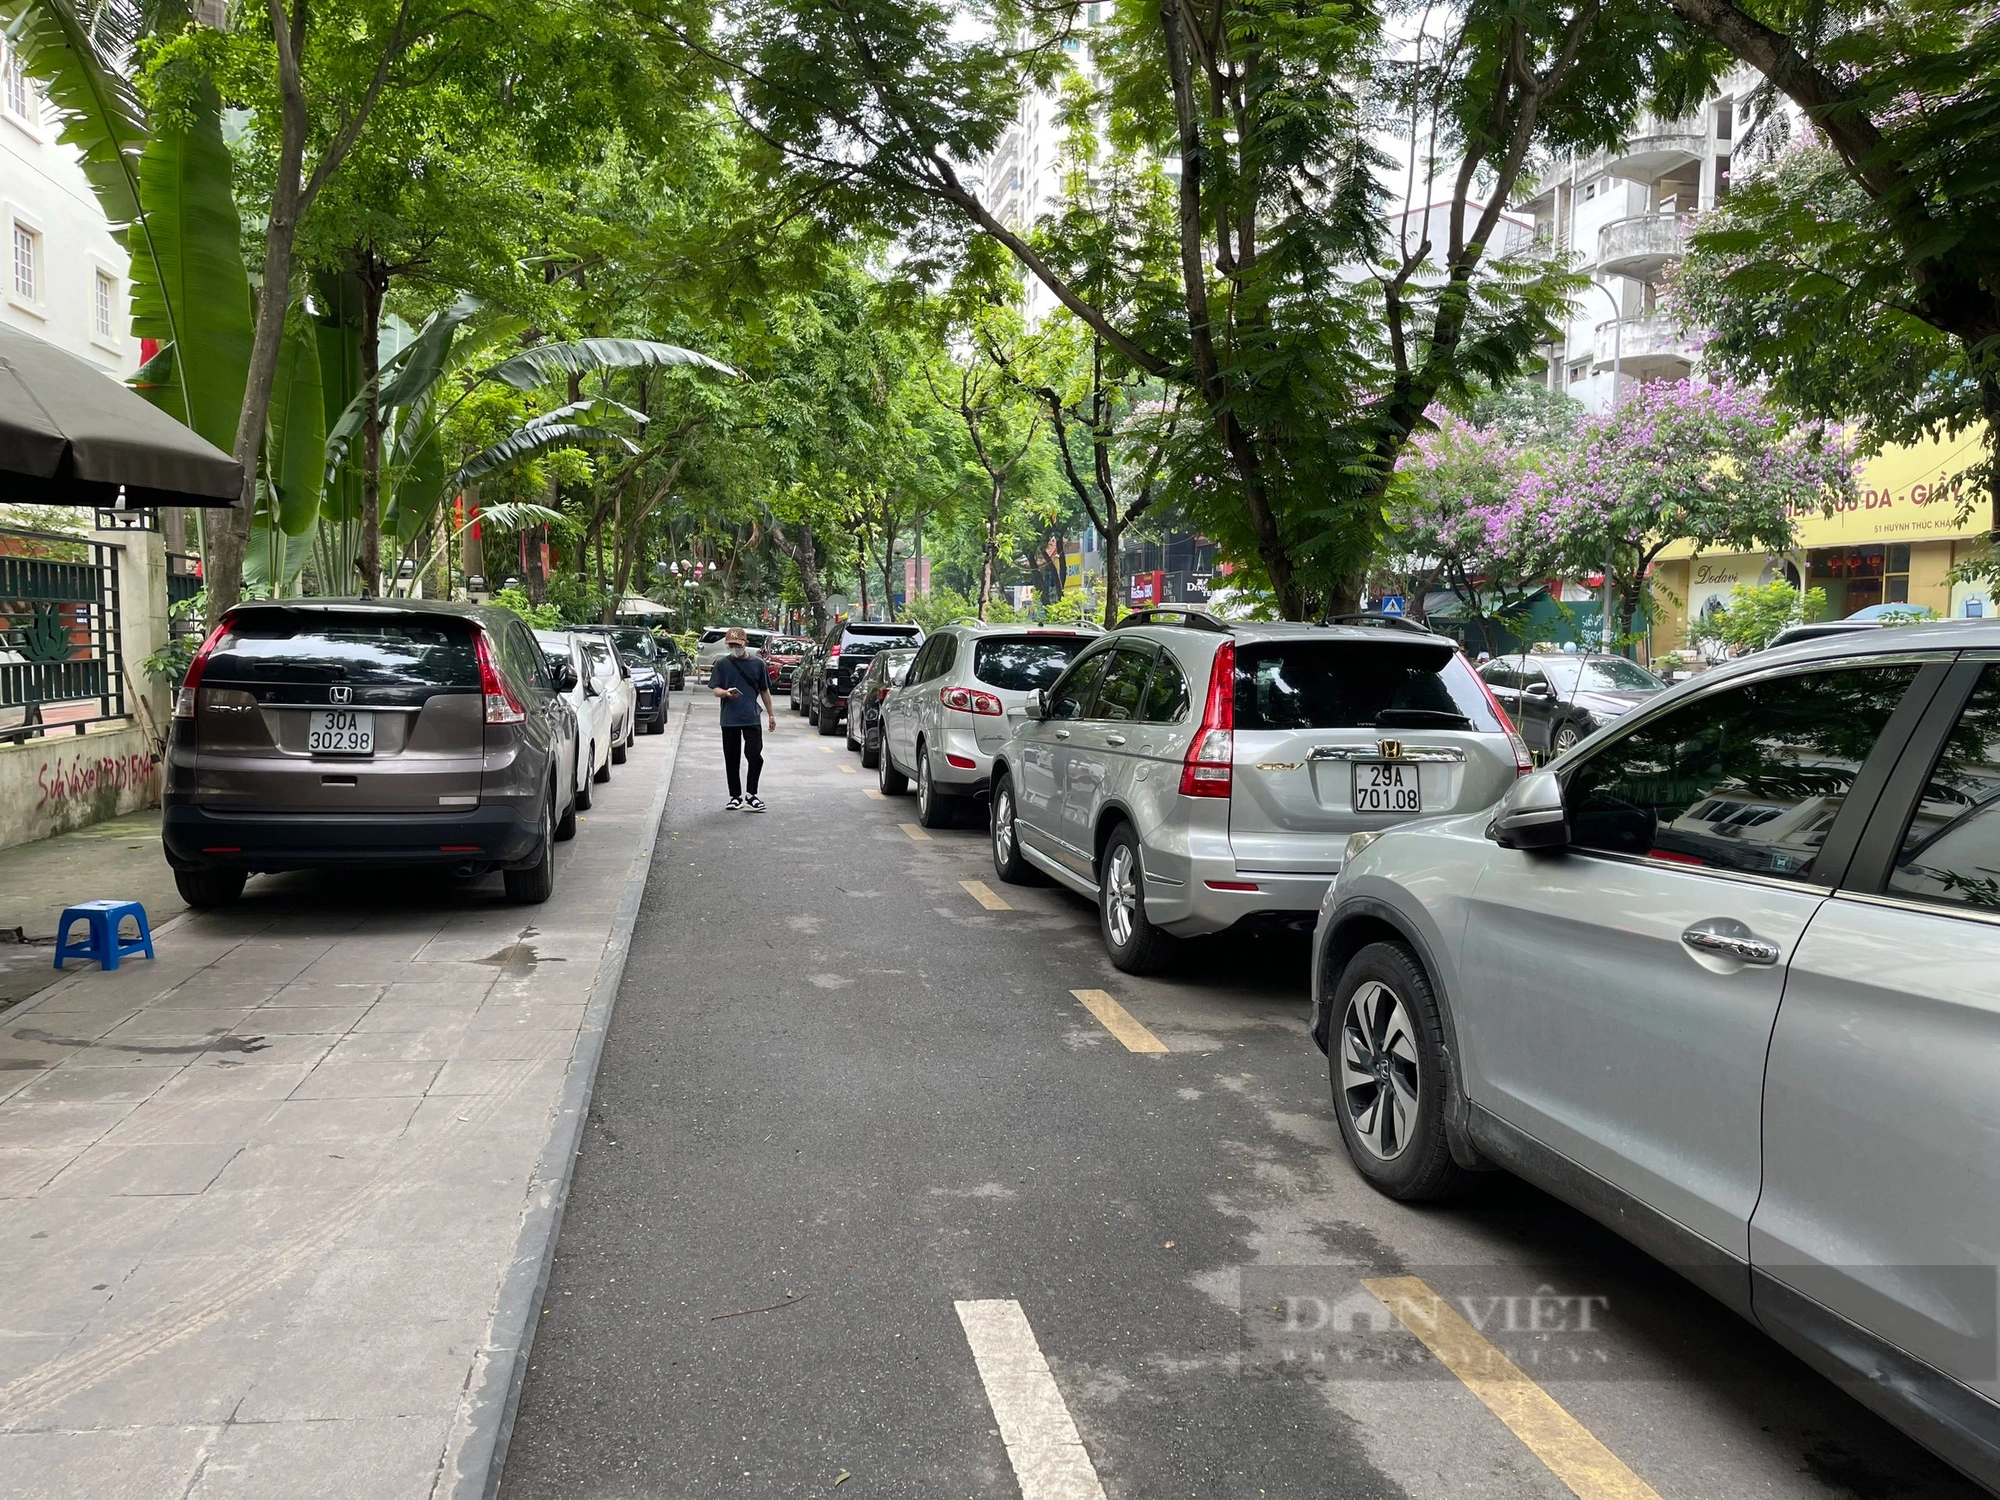 Tái diễn cảnh lấn chiếm vỉa hè tại một số nơi ở Hà Nội, người dân phải đi bộ dưới lòng đường - Ảnh 3.